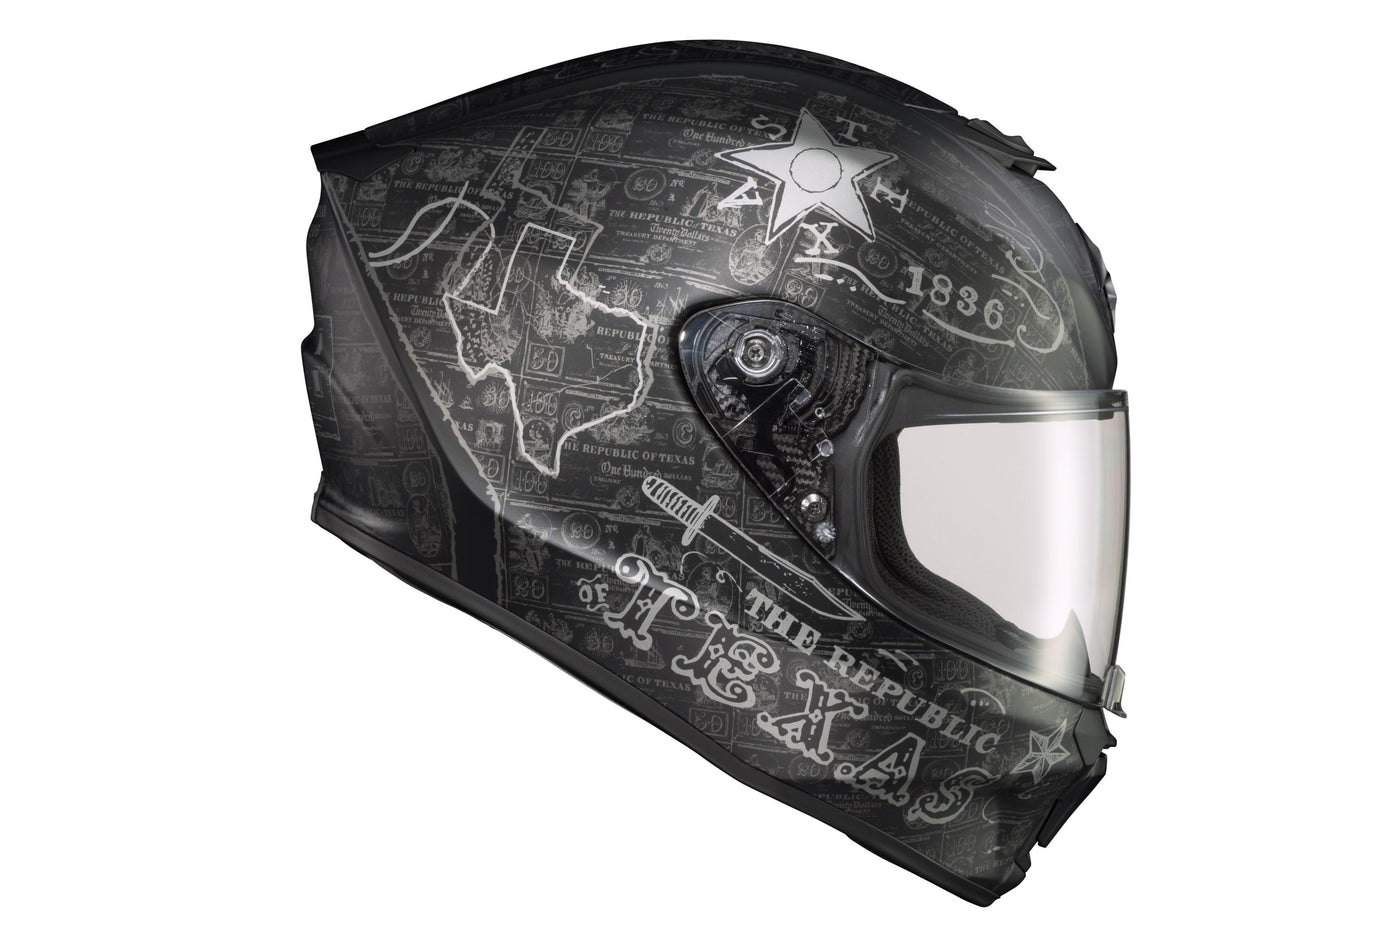 Exo-r420 Full Face Helmet Lone Star Black/gold Xl